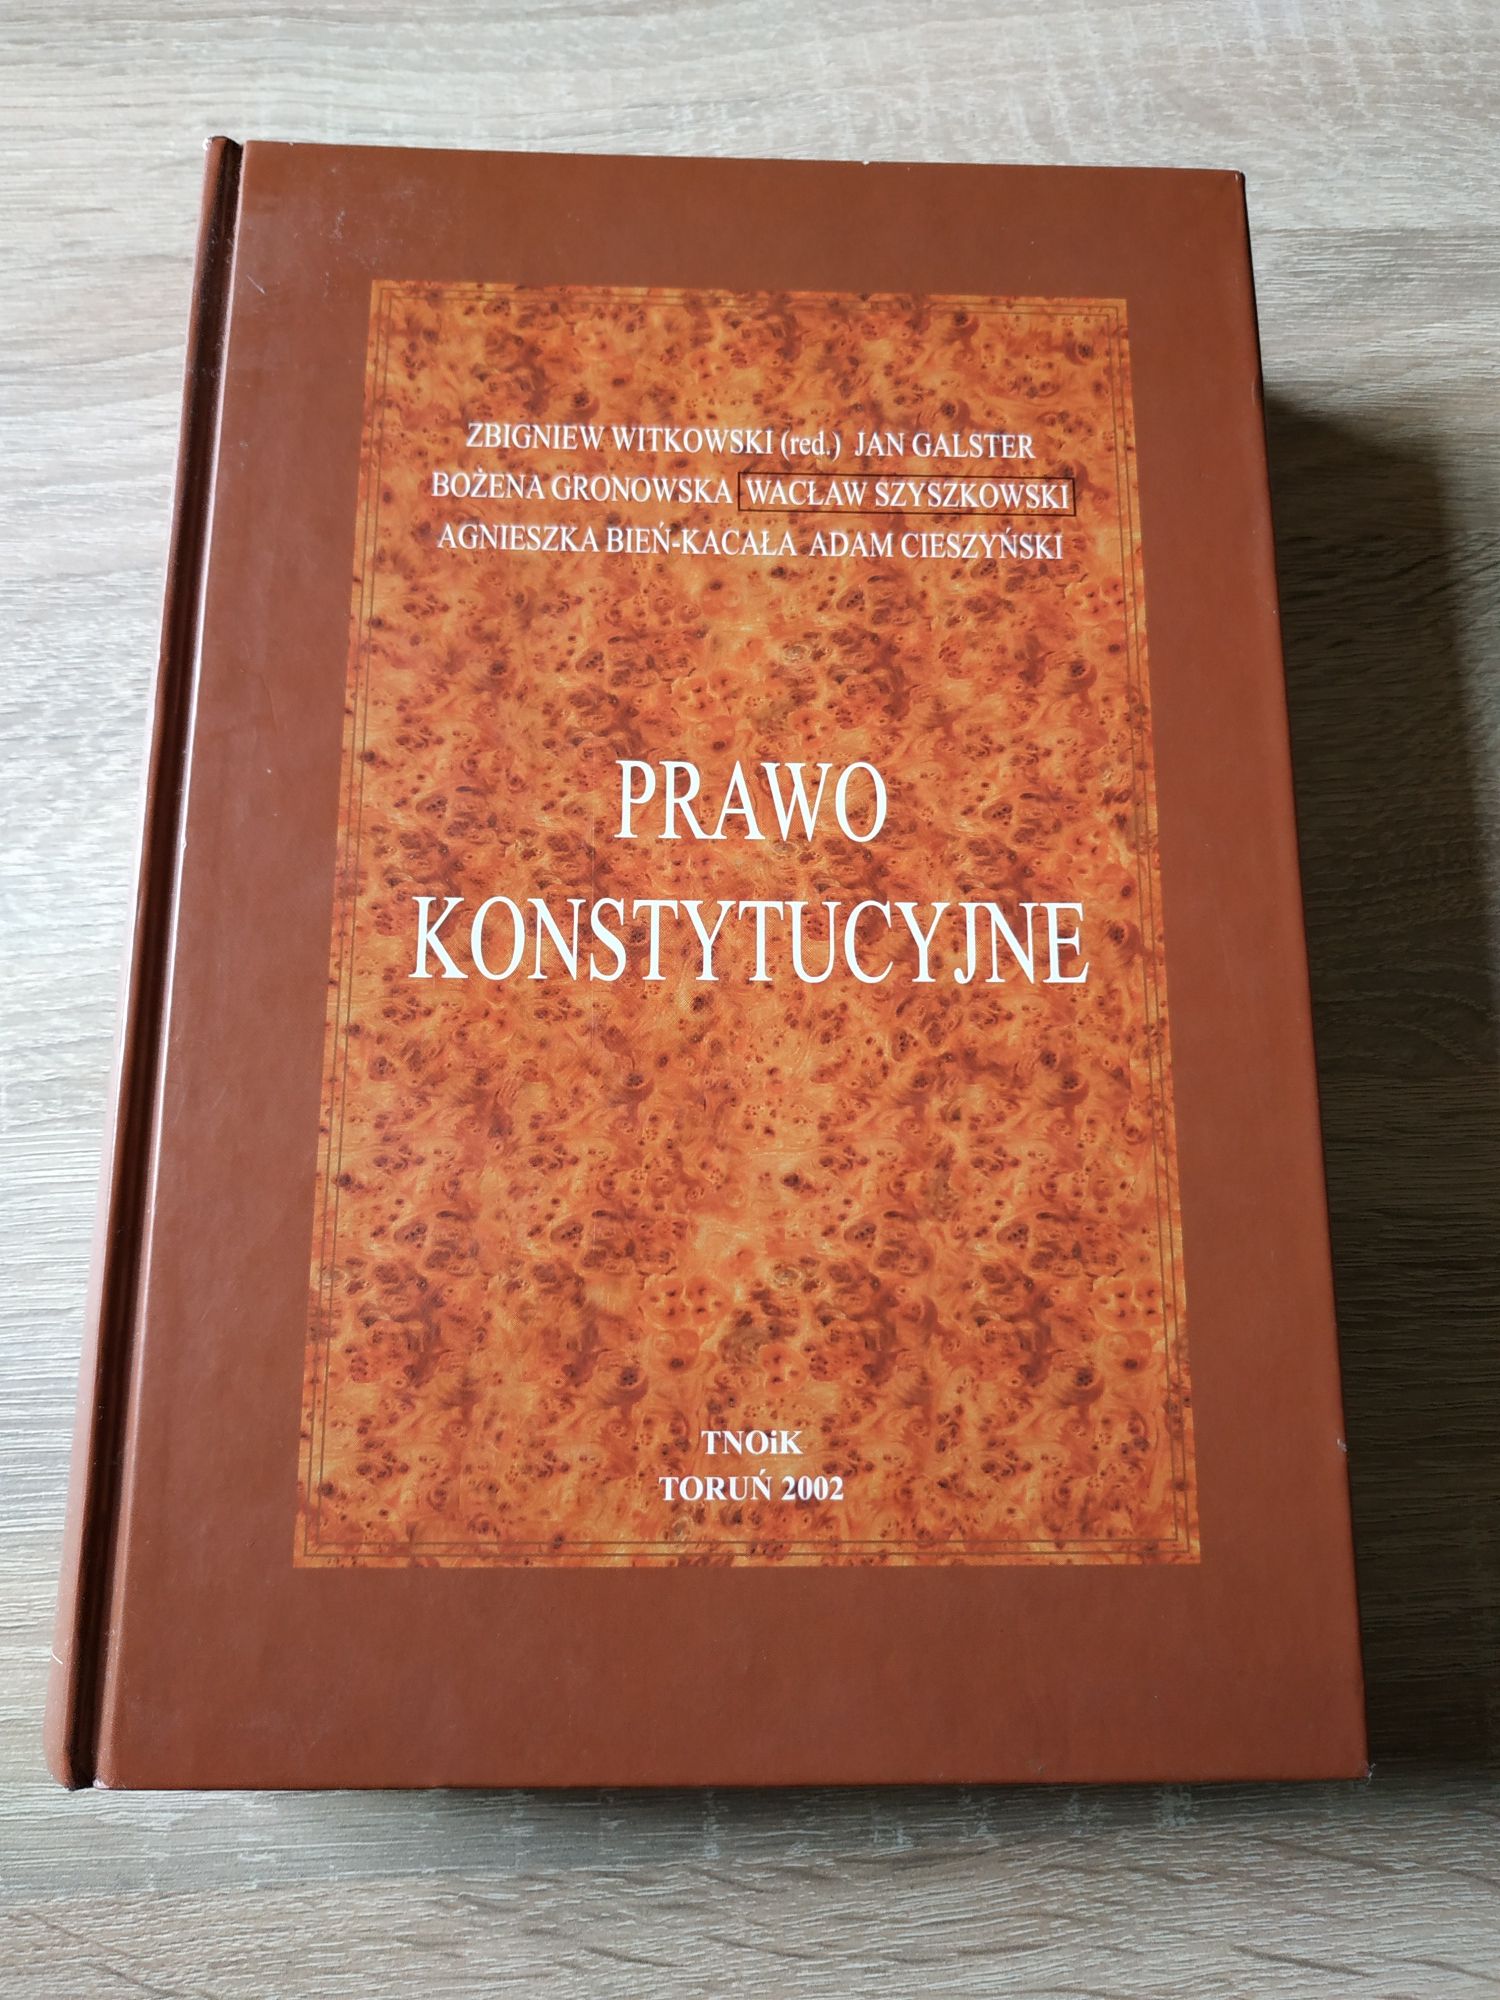 Prawo konstytucyjne, Witkowski, Galster, Gronowska, Szyszkowski, Bień-